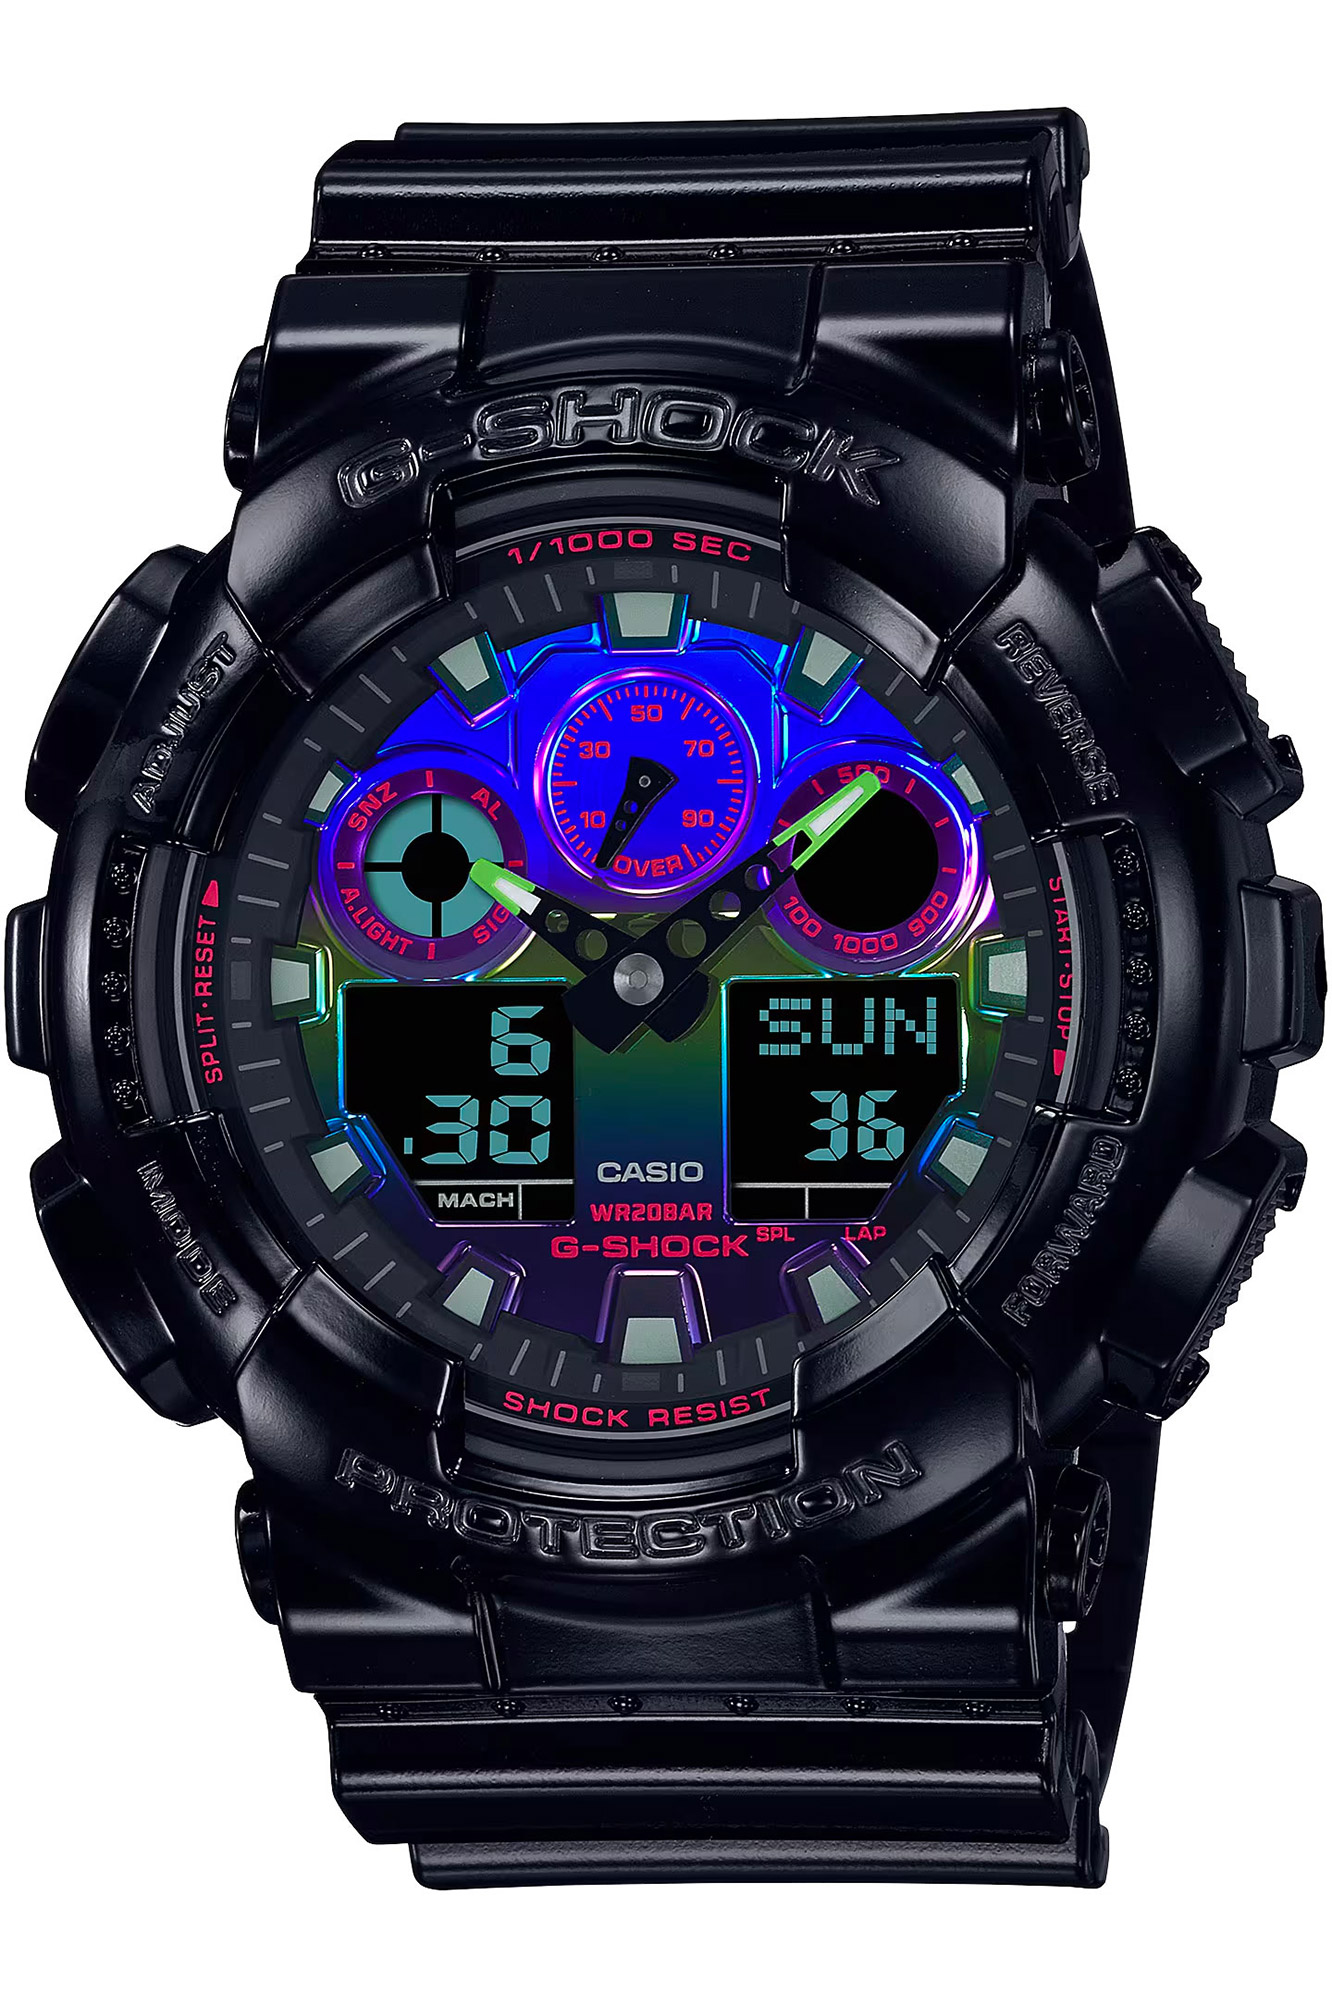 Watch CASIO G-Shock ga-100rgb-1aer